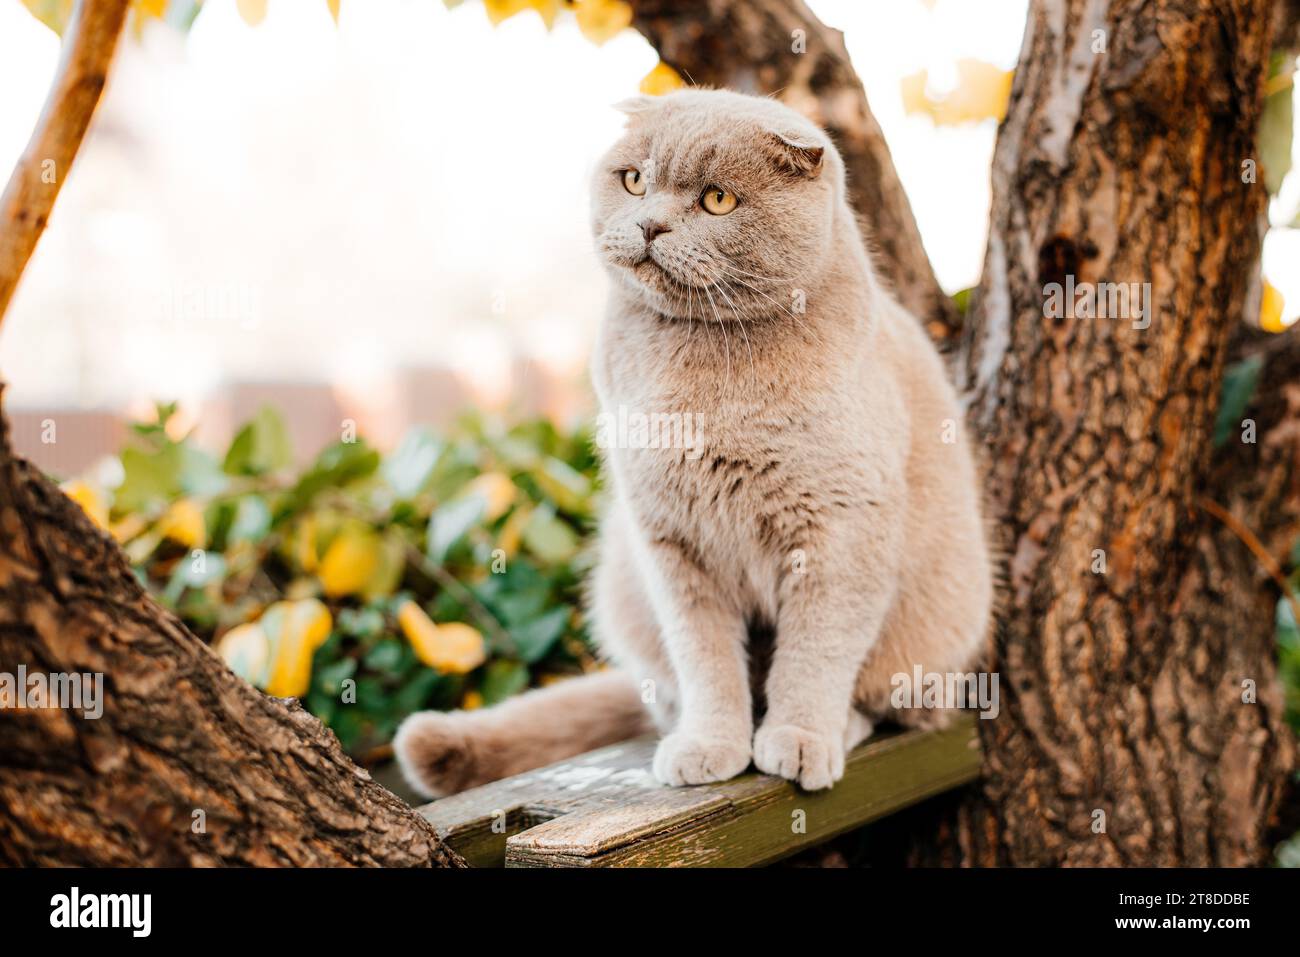 Katze klettert auf einen Baum und kommt vom Baum. Katze auf dem Baum auf natürlichem Hintergrund. Stockfoto